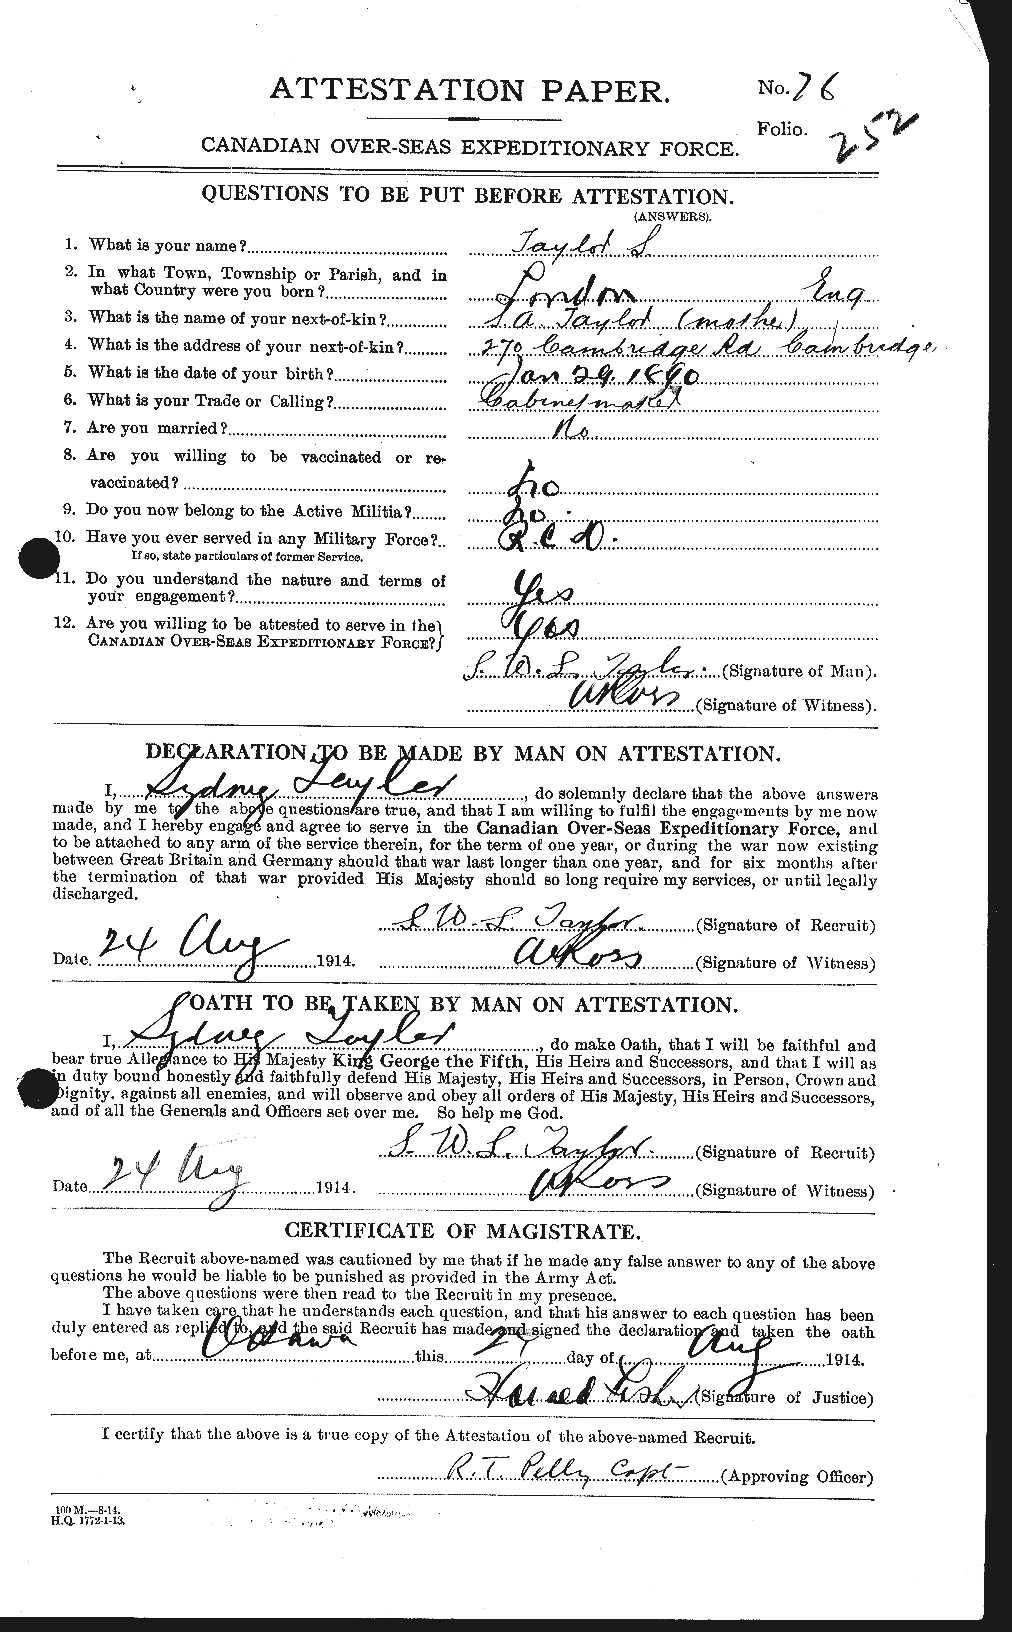 Dossiers du Personnel de la Première Guerre mondiale - CEC 627544a